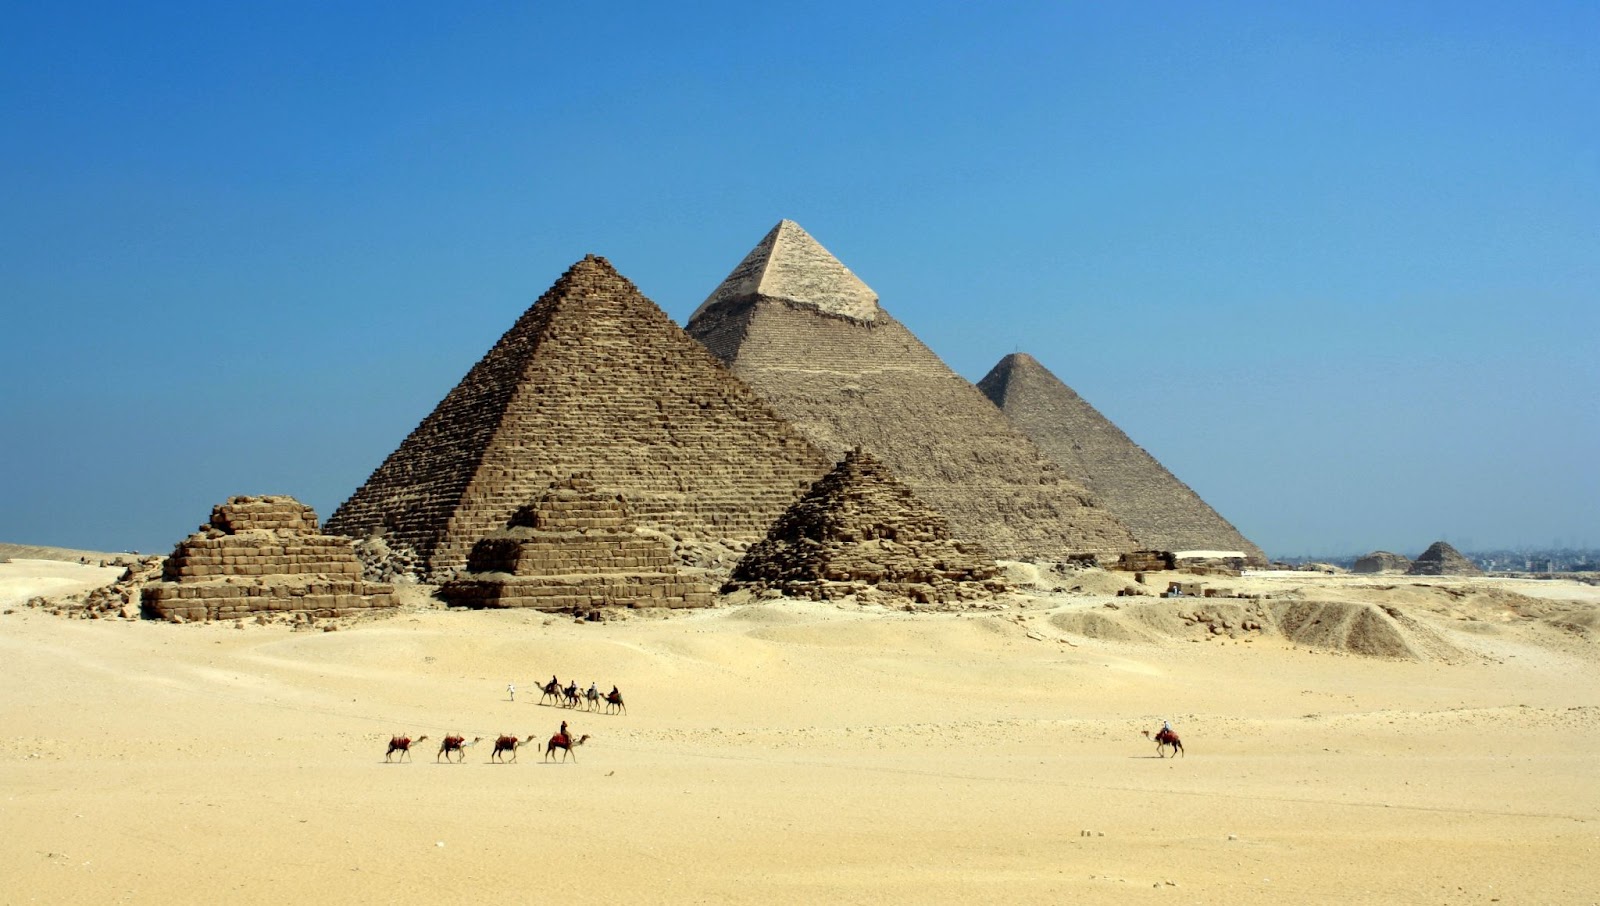  podemos observar na imagem várias das pirâmides do Egito, na frente delas há algumas pessoas andando a camelo